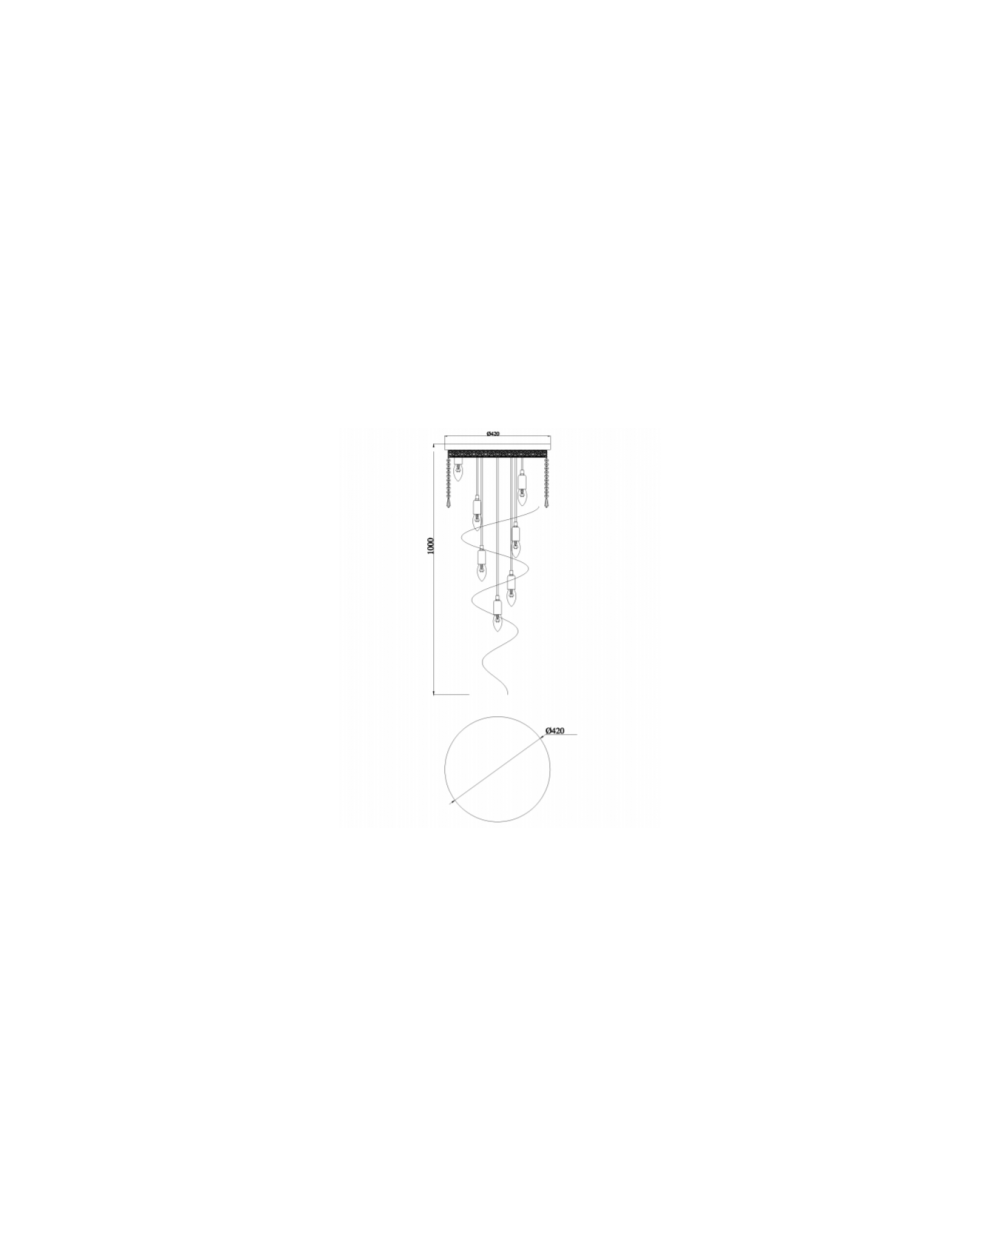 Lampa sufitowa CASCADE żyrandol klasyczny kryształowy Maytoni